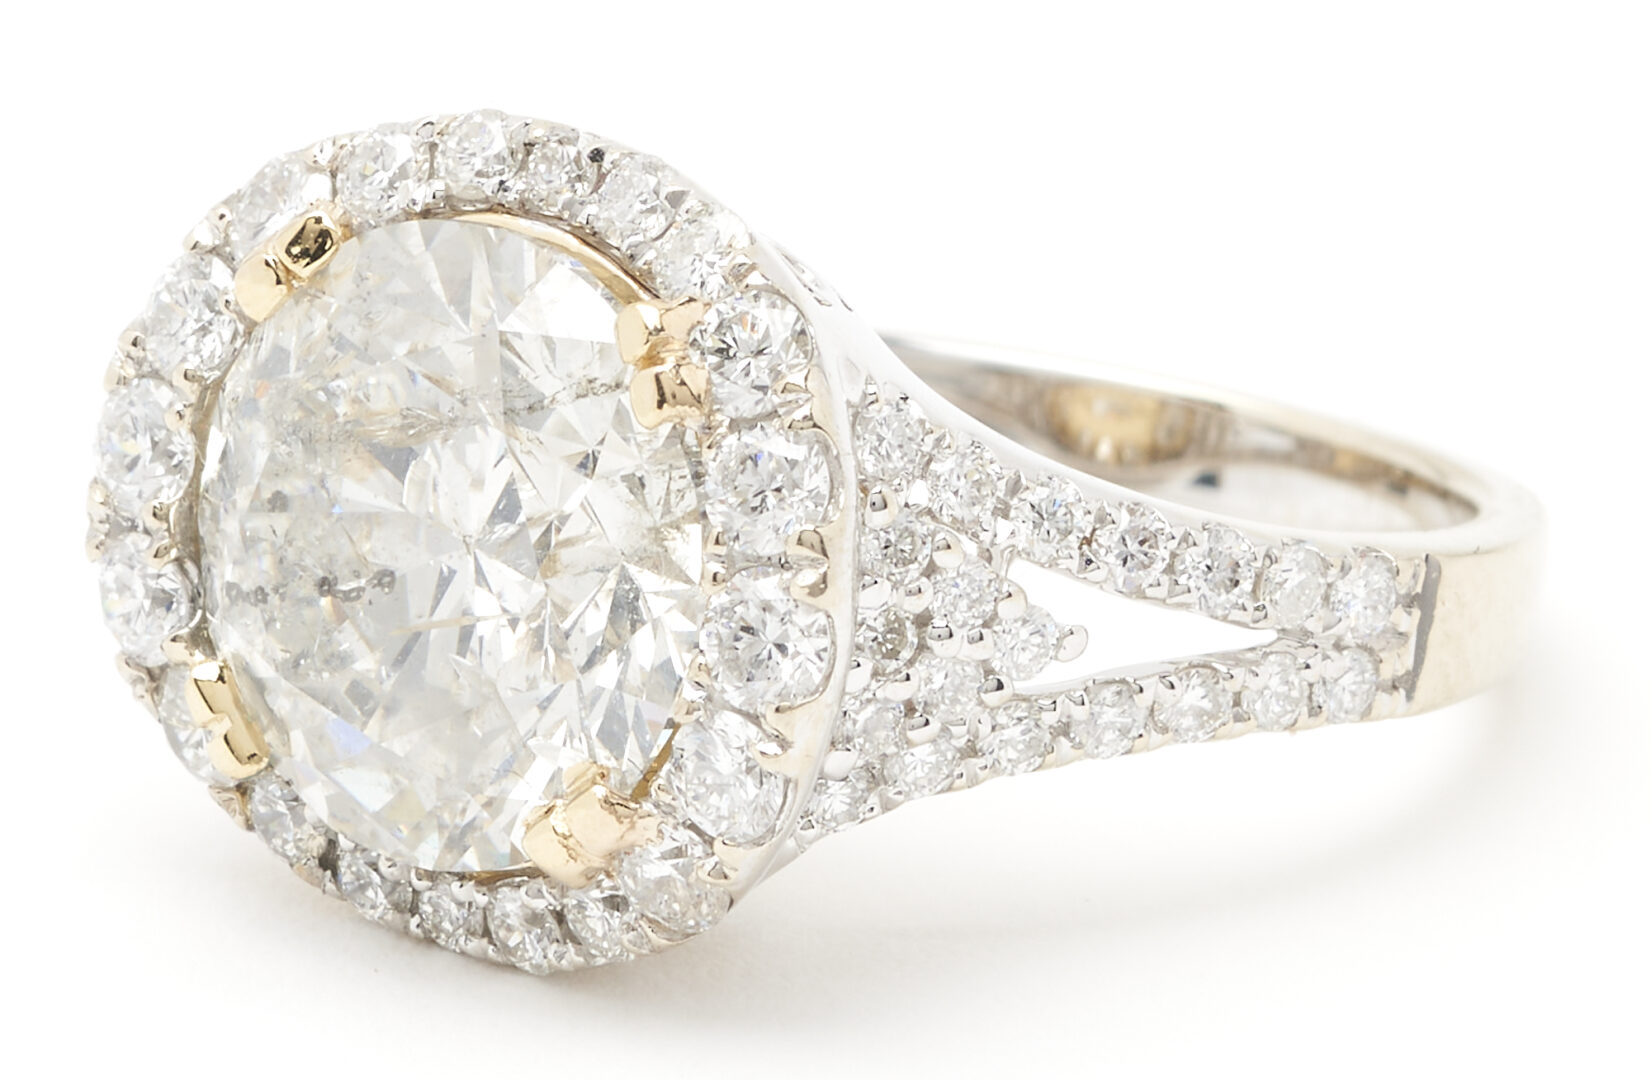 Lot 295: Ladies 5.11 Carat Round Brilliant Diamond Ring, GIA Report